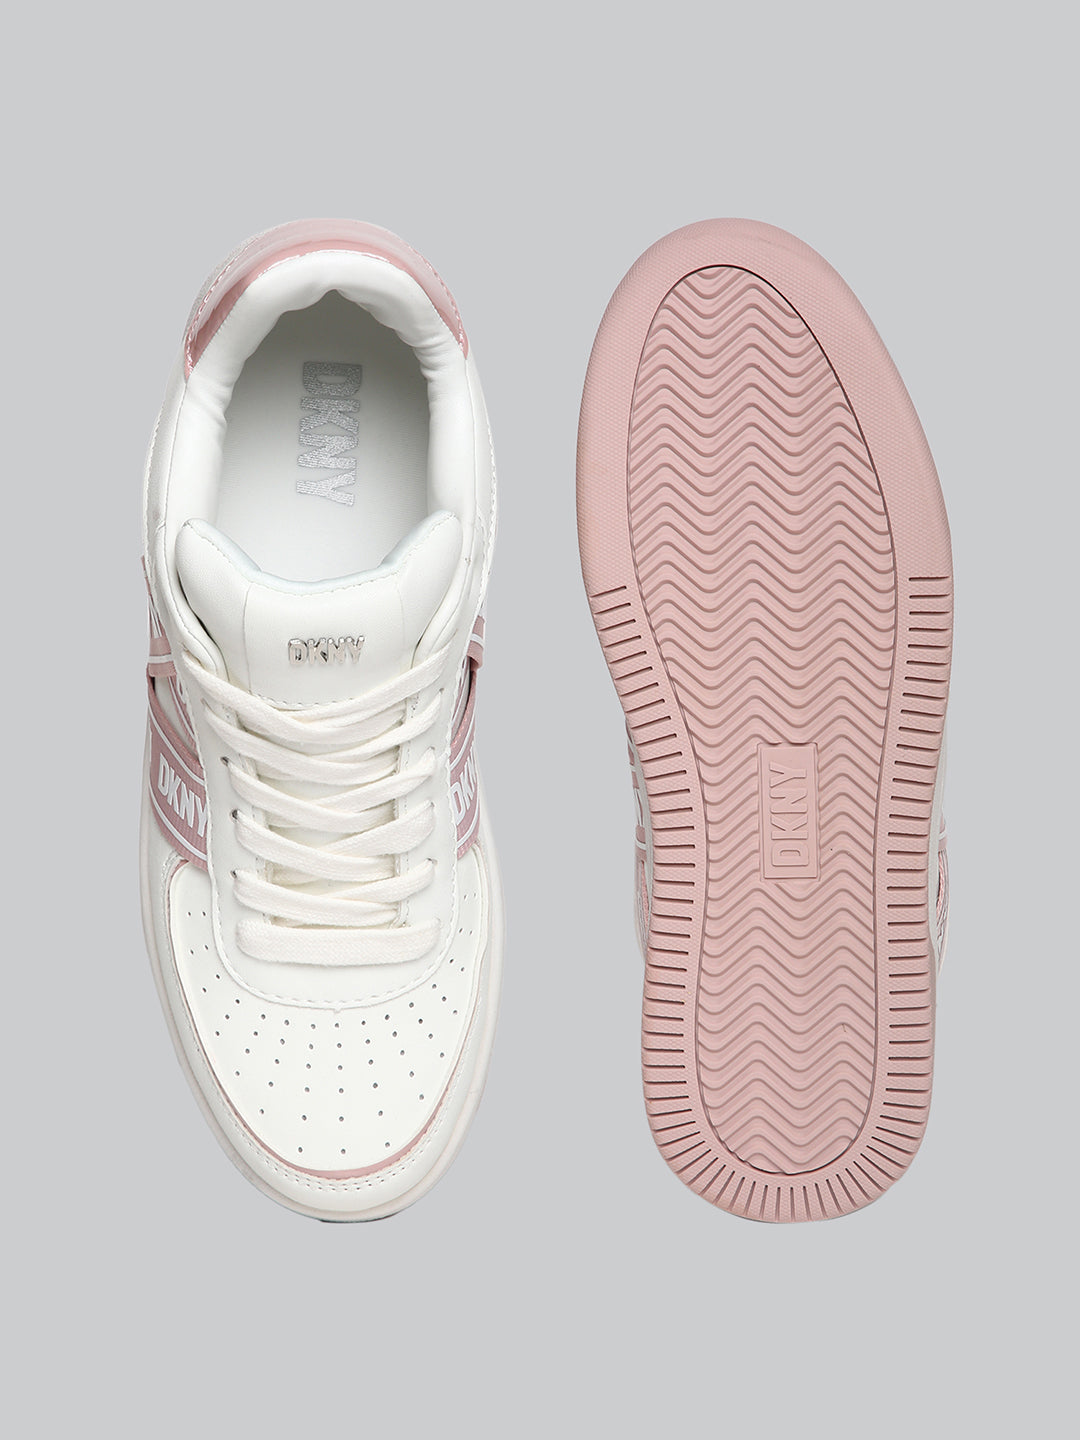 DKNY Women White Sneakers